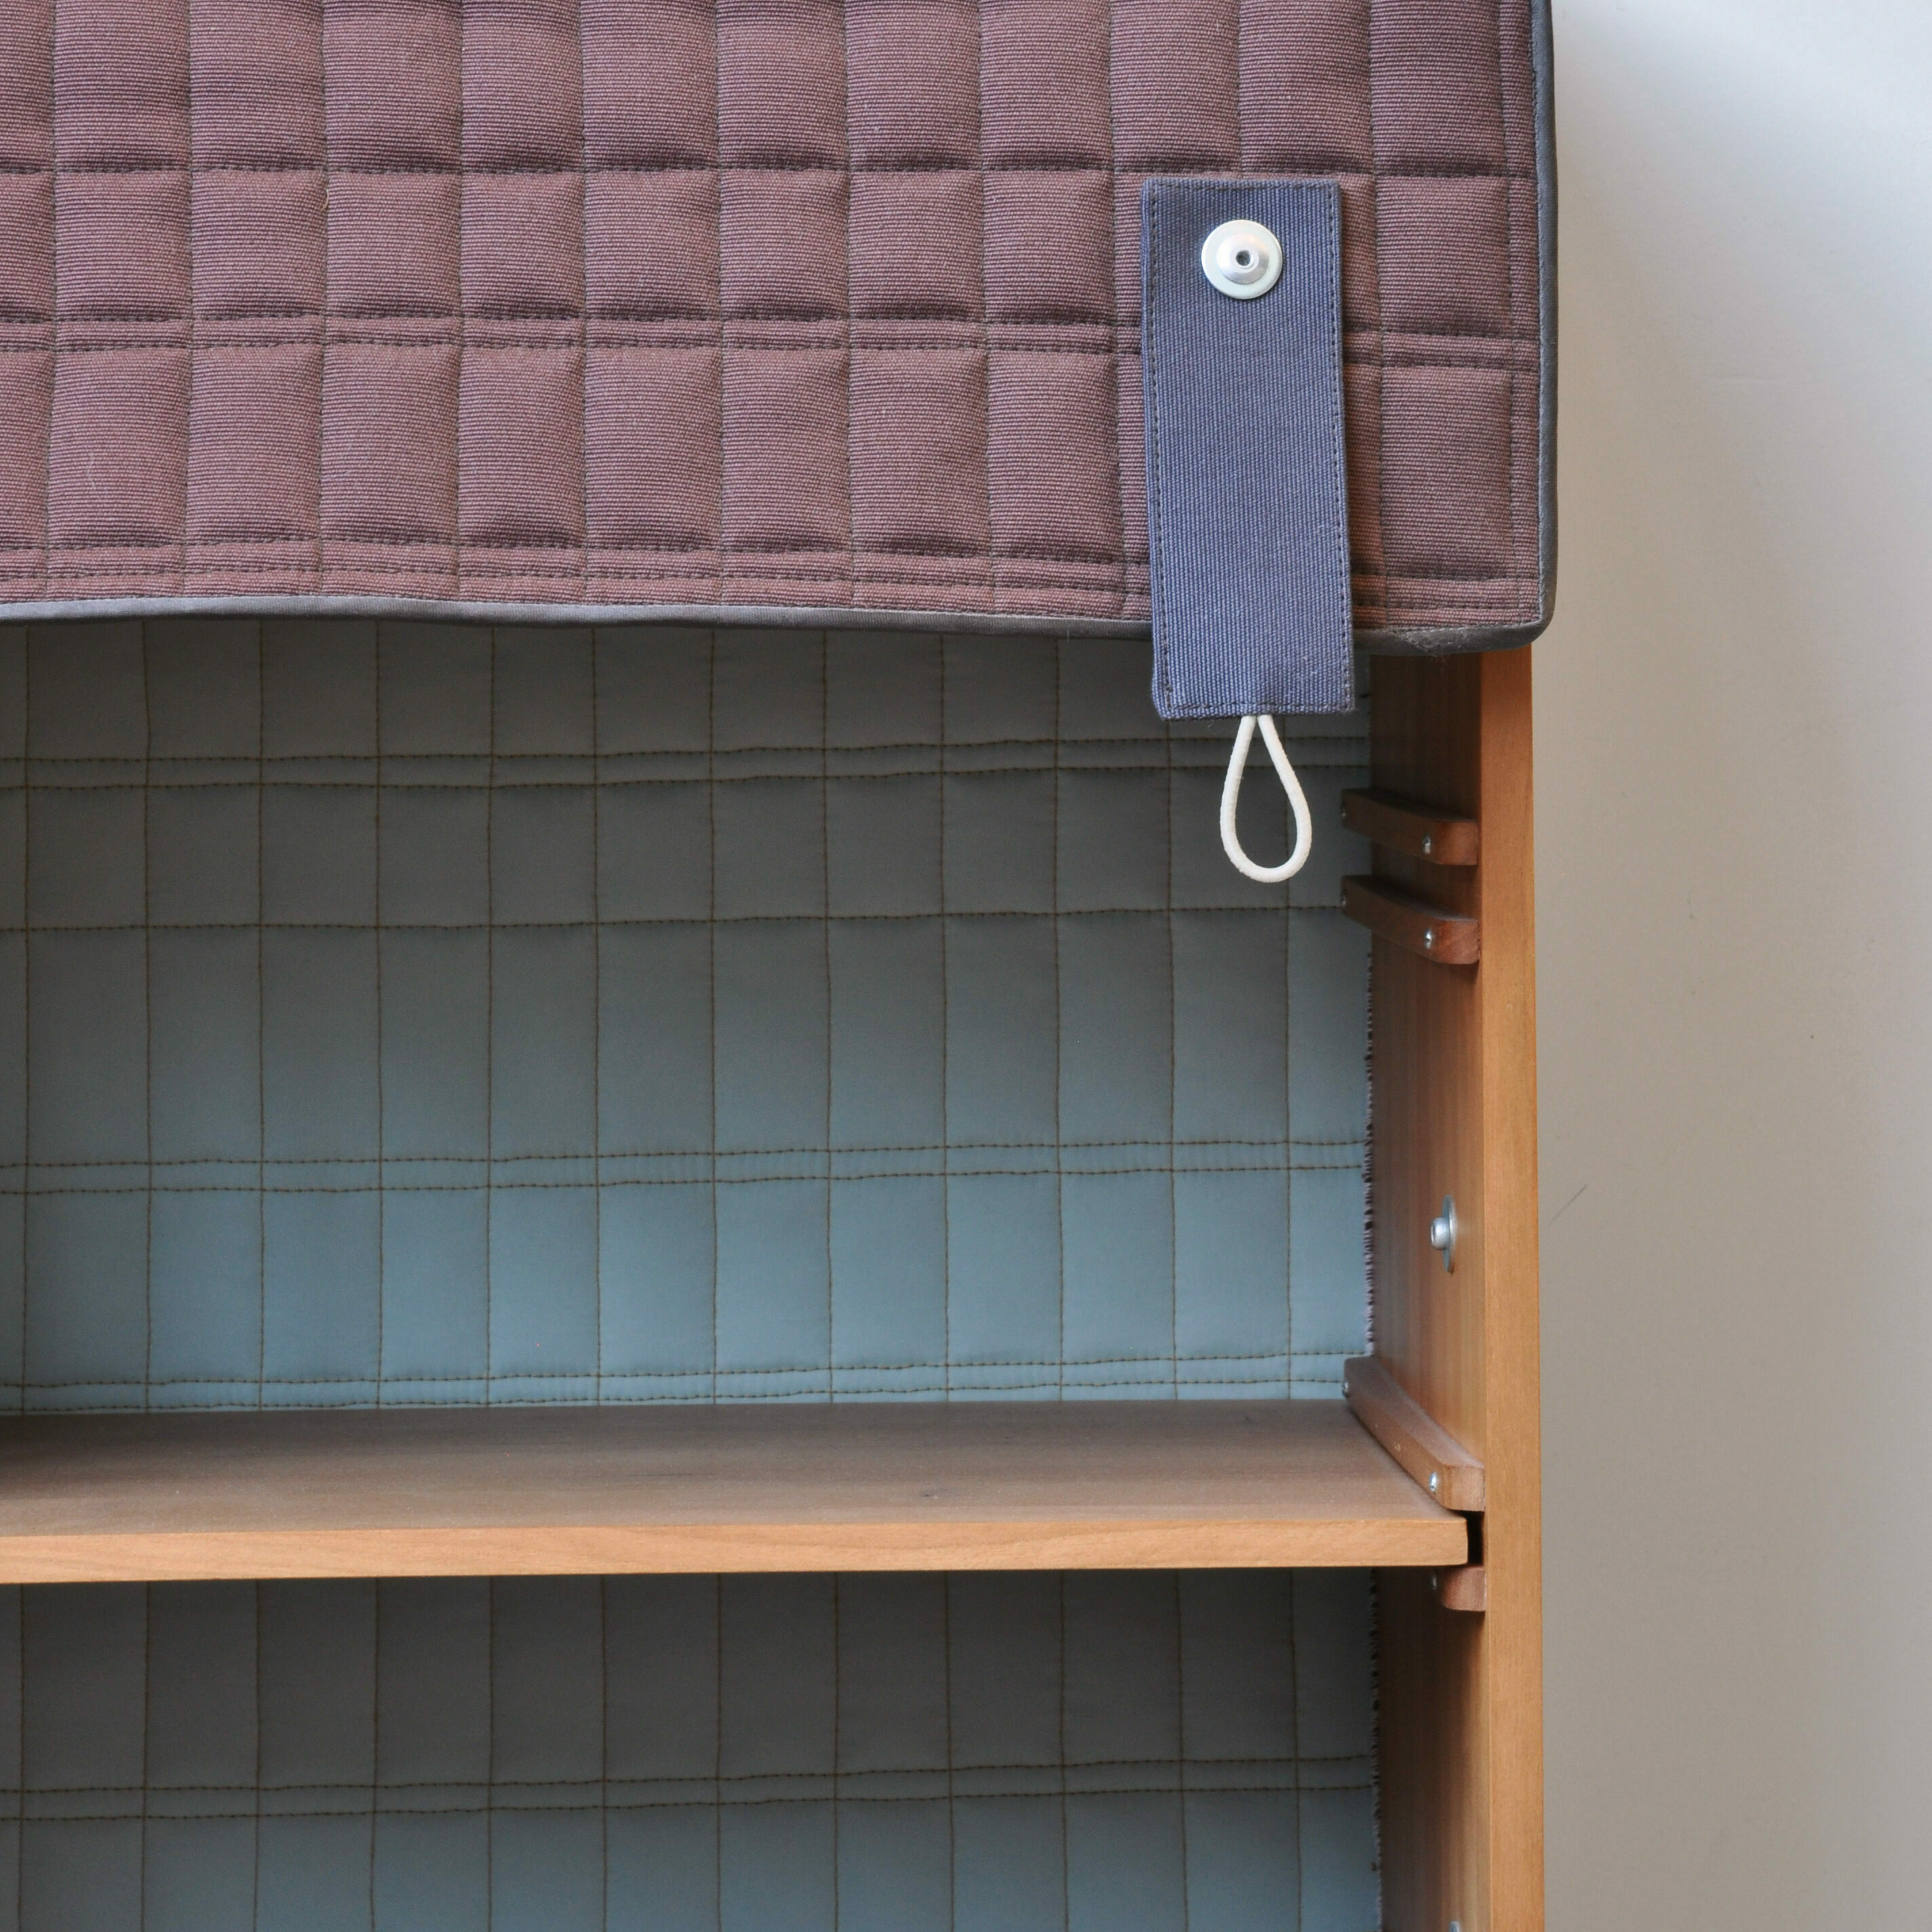 tassenkast lotty lindeman koefferchen regal design inneneinrichtung einrichtungsidee